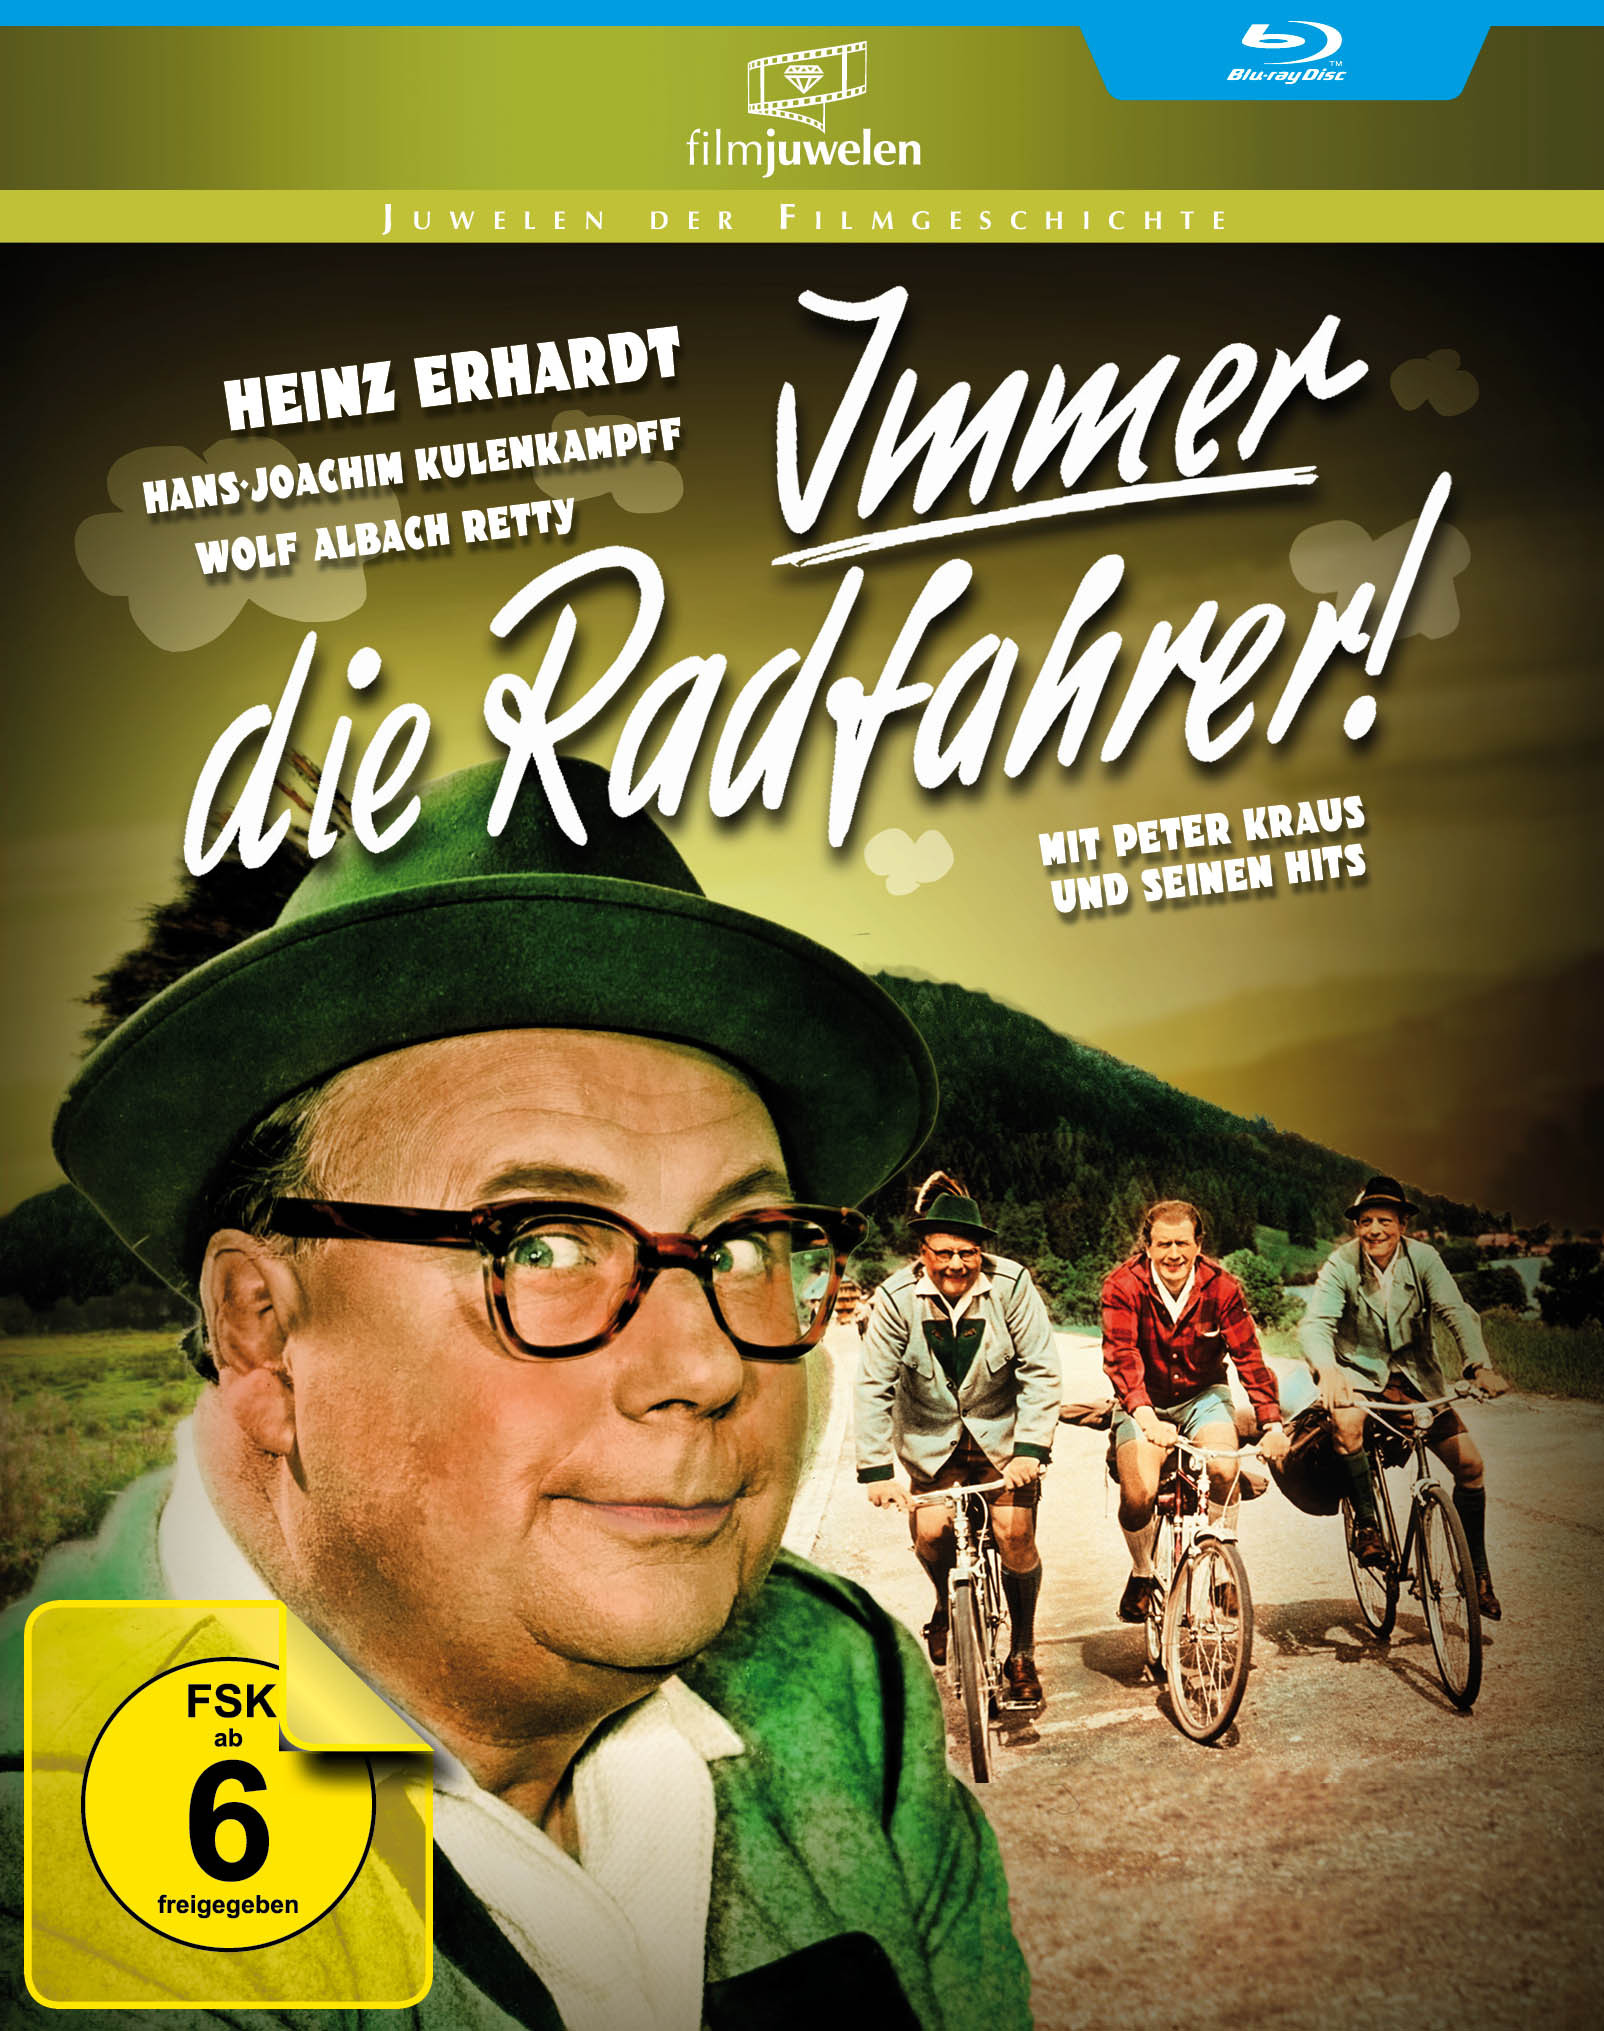 Image of Heinz Erhardt - Immer die Radfahrer Filmjuwelen